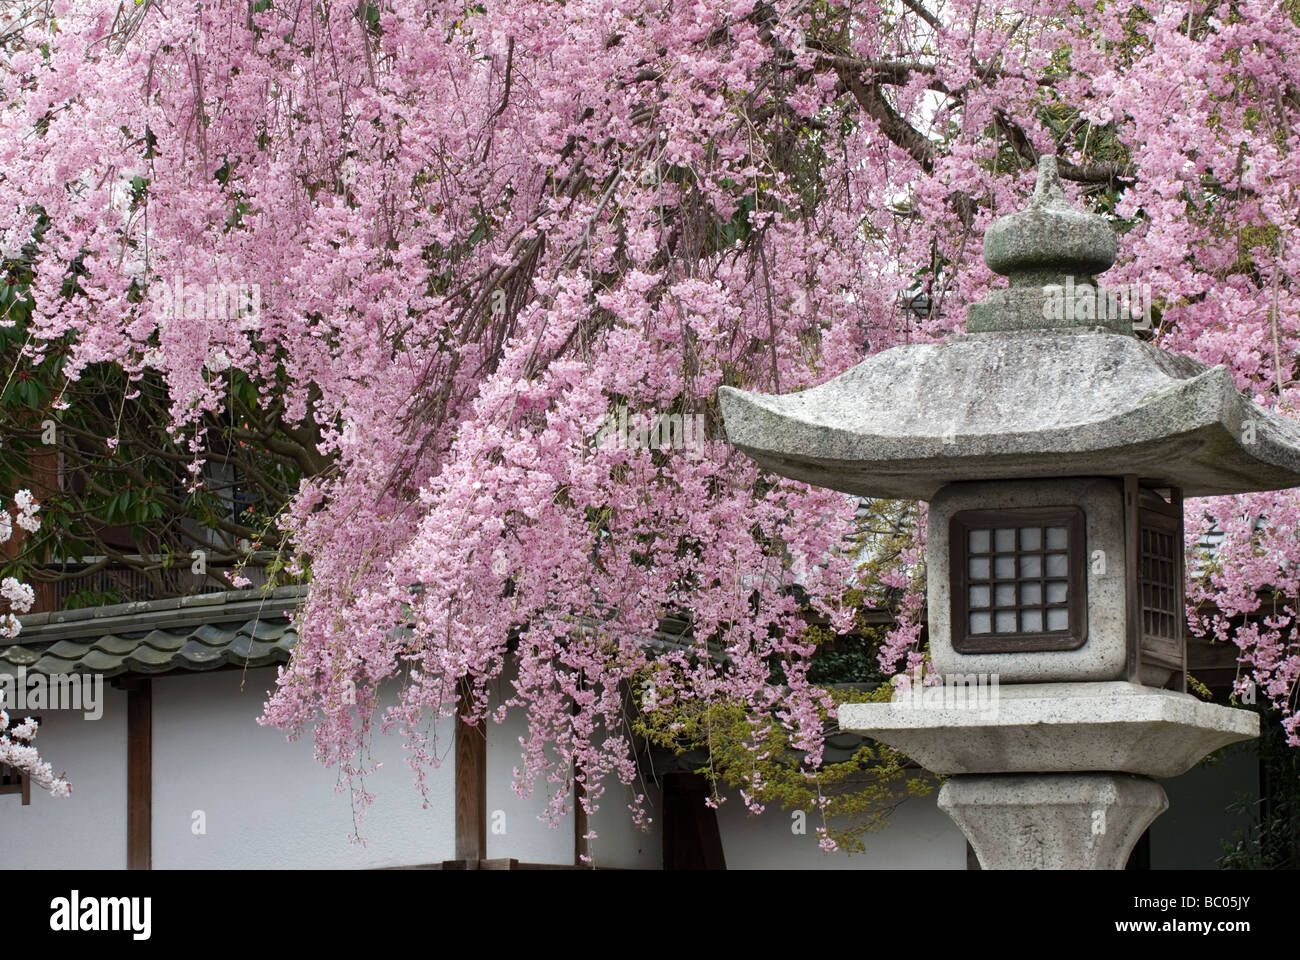 Un arbre chargé de printemps les fleurs de cerisier se bloque derrière une lanterne de pierre traditionnelle japonaise dans une composition artistique Banque D'Images